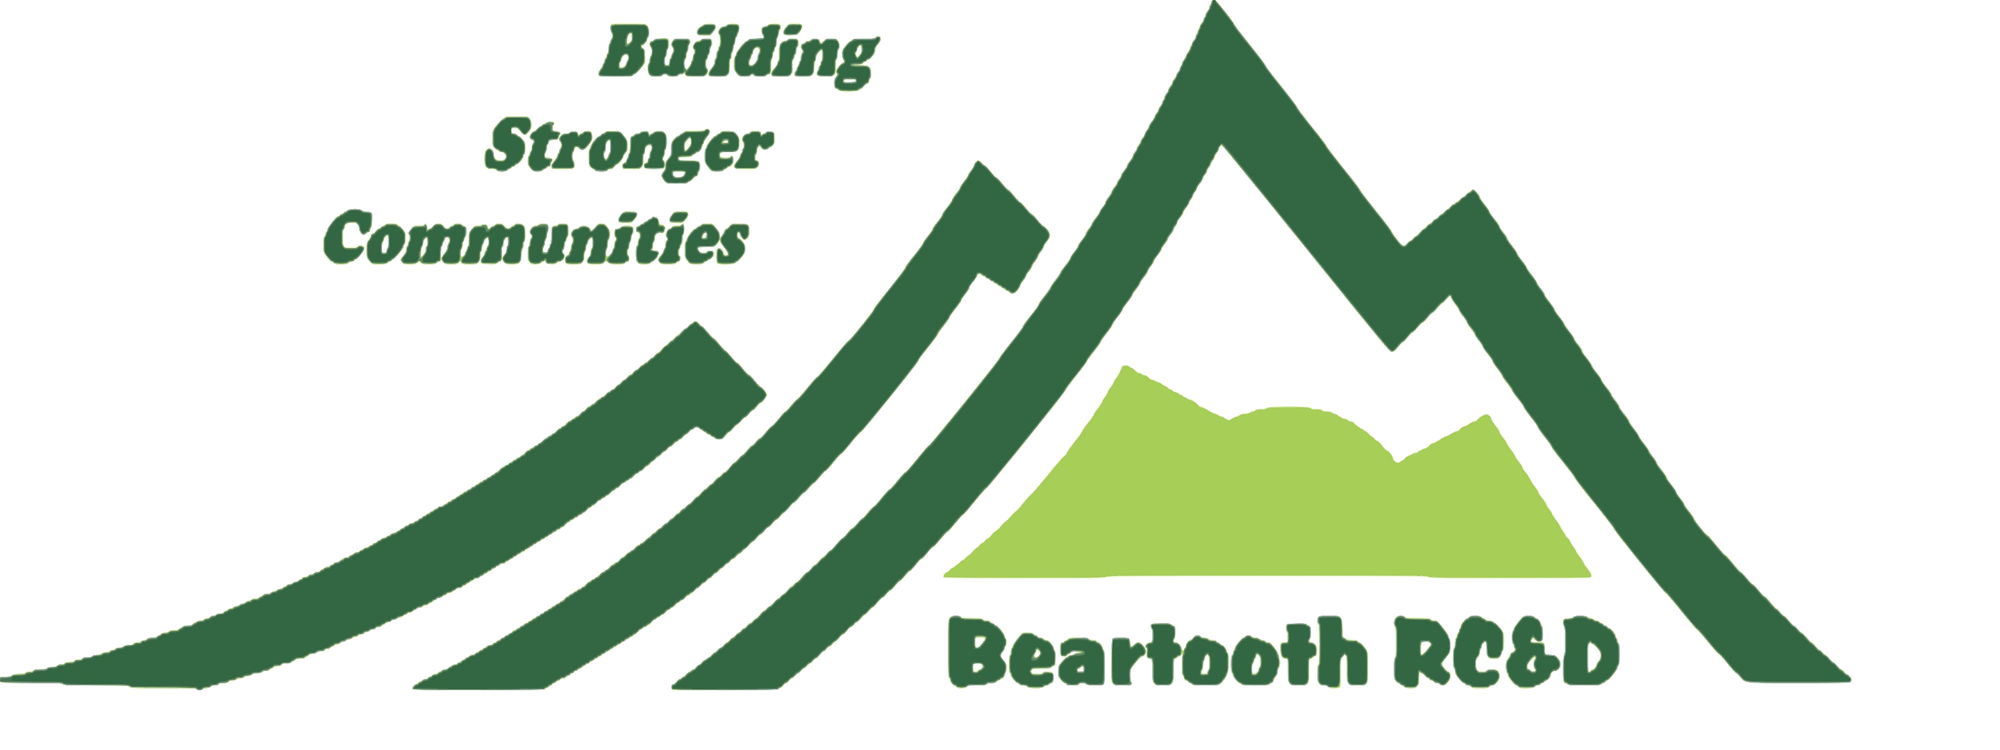 Beartooth Logo - green mountains